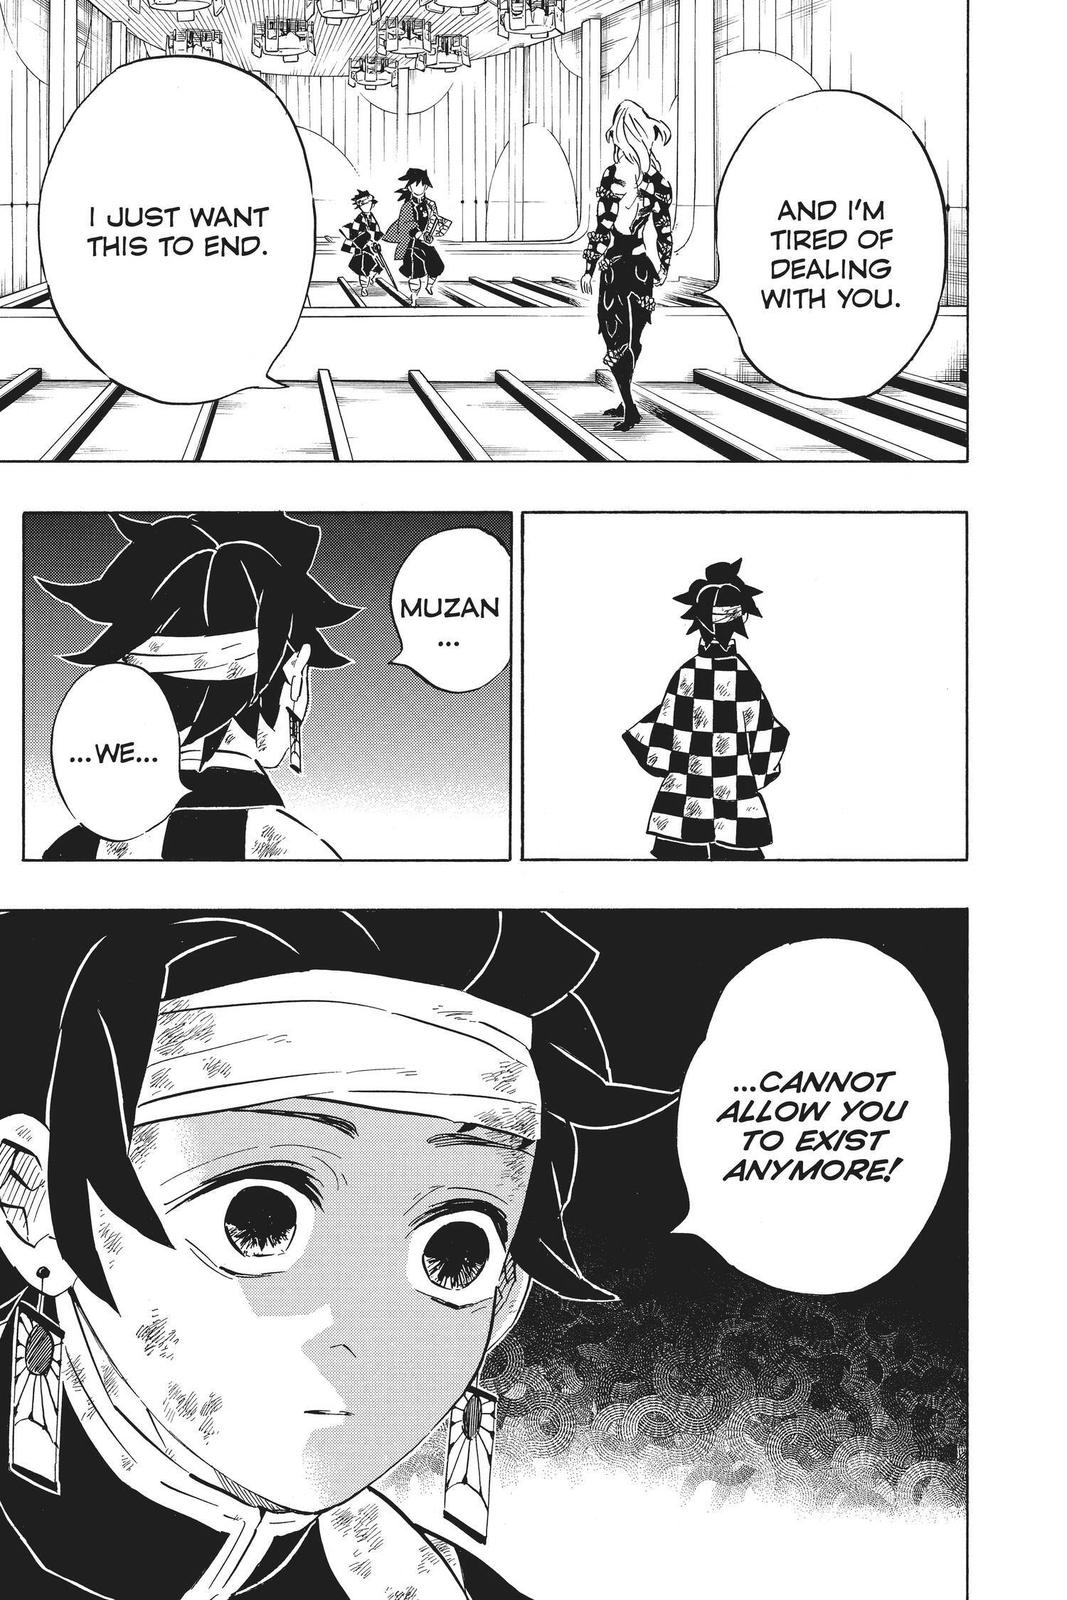 Demon Slayer Manga Manga Chapter - 181 - image 14